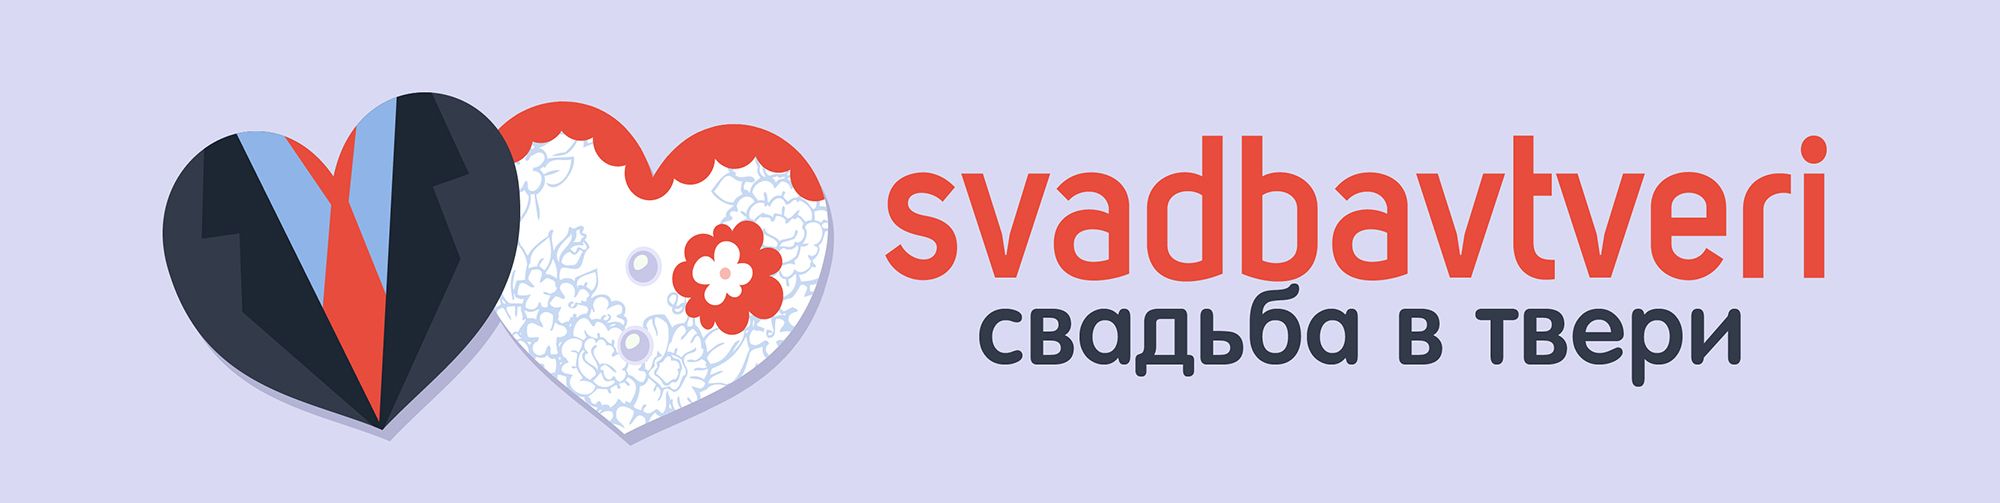 Логотип для свадебного портала - дизайнер vadimuch-1